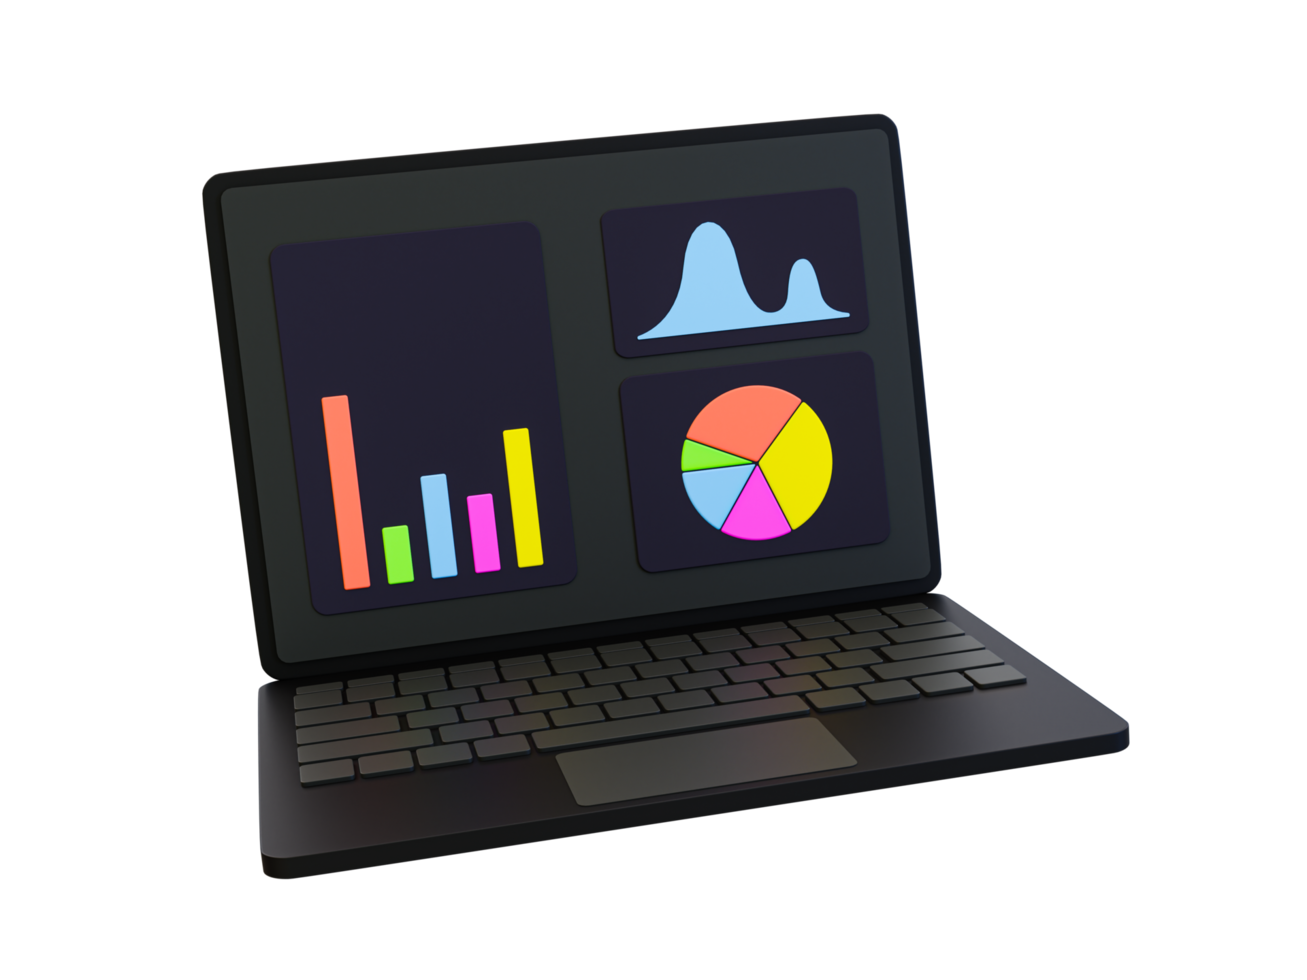 Laptop mínimo 3D com gráfico estatístico. gráficos de negociação. previsão do mercado de ações. ilustração 3D. png